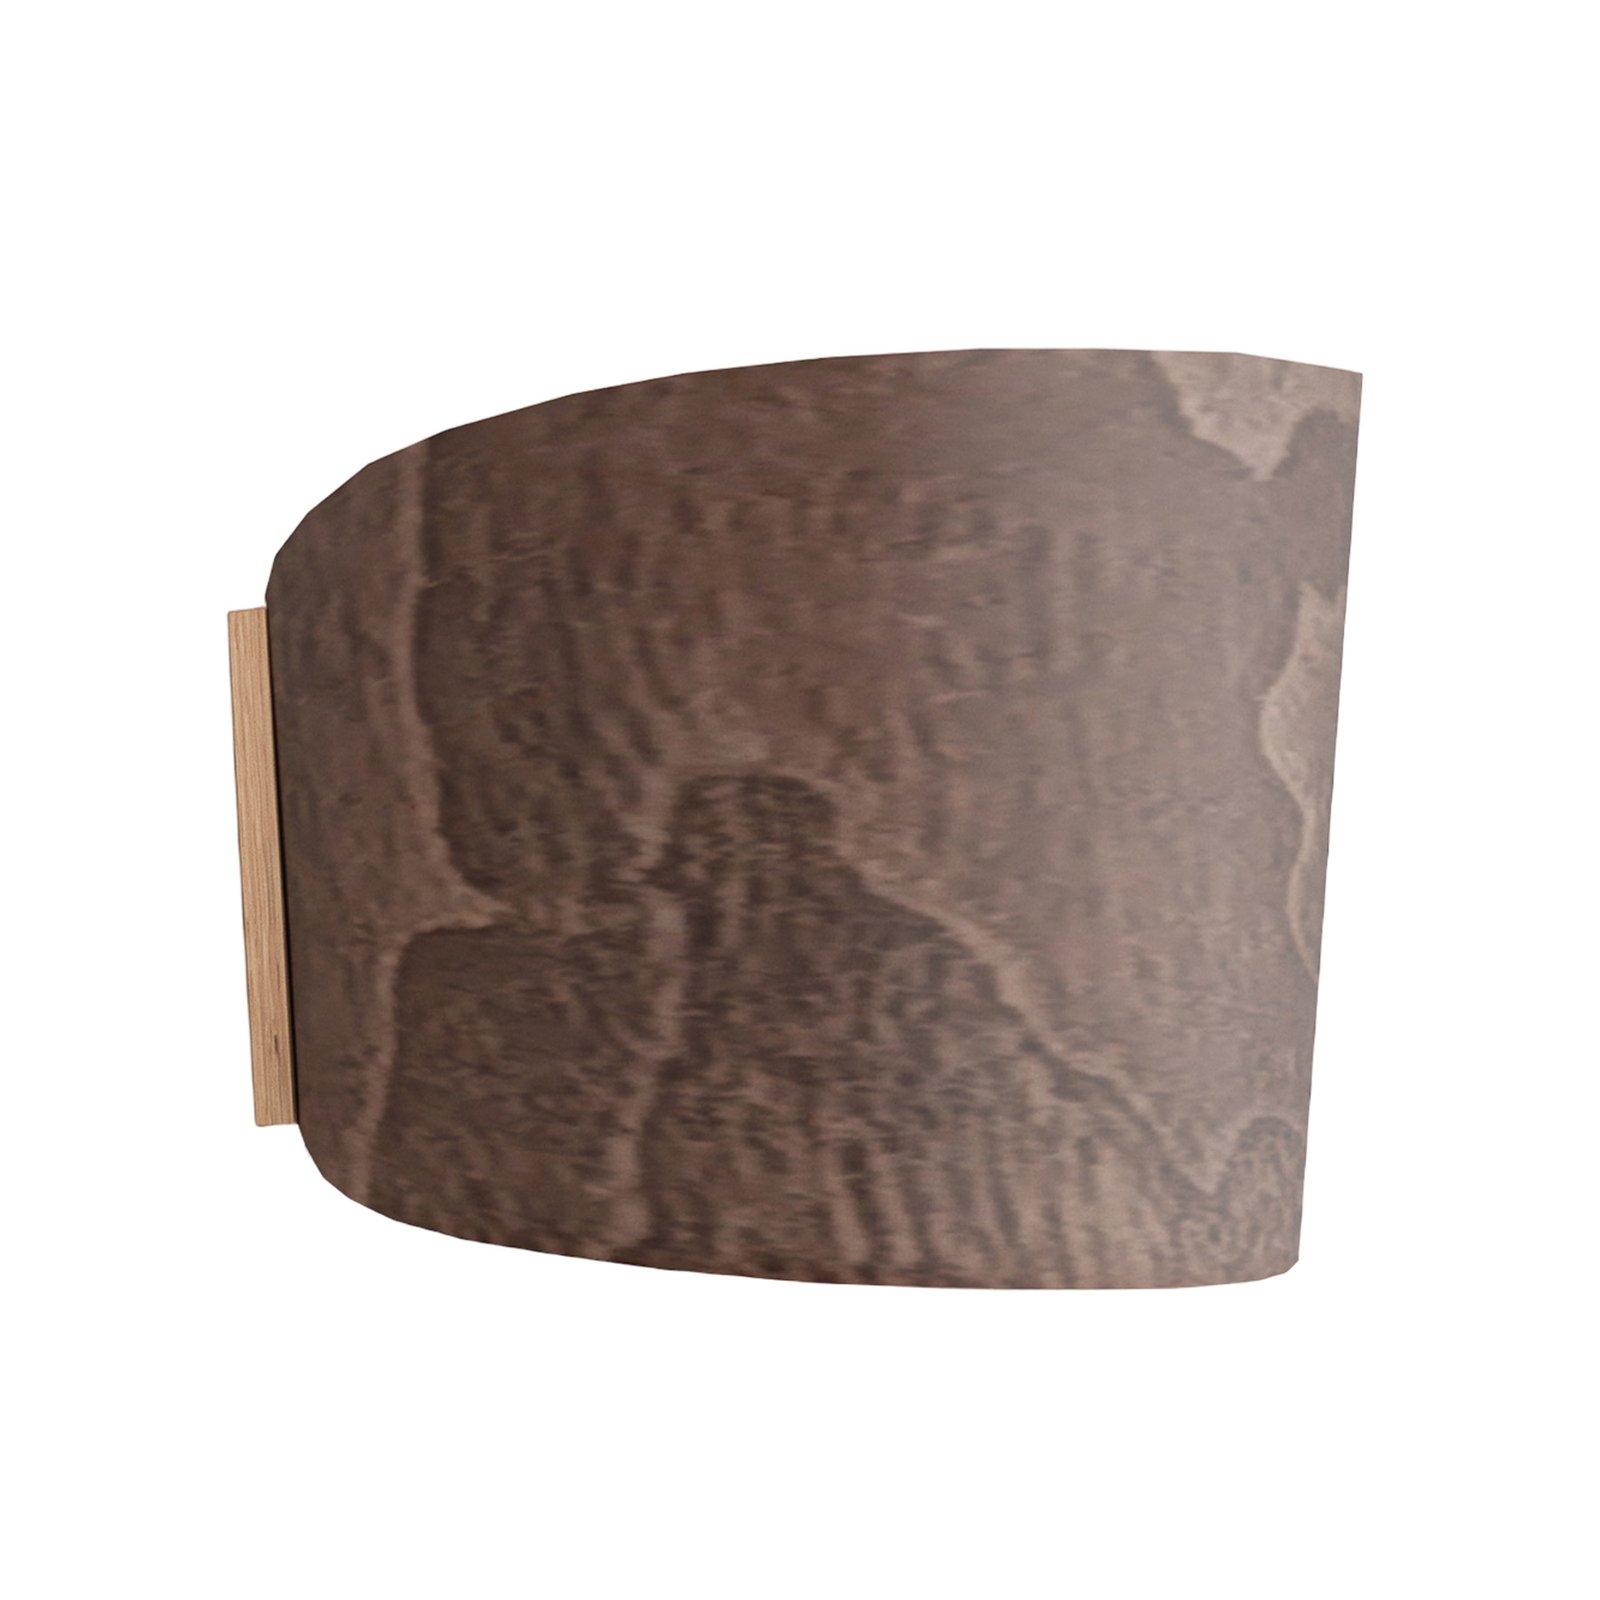 ALMUT 1411 wall light cylindrical walnut wood